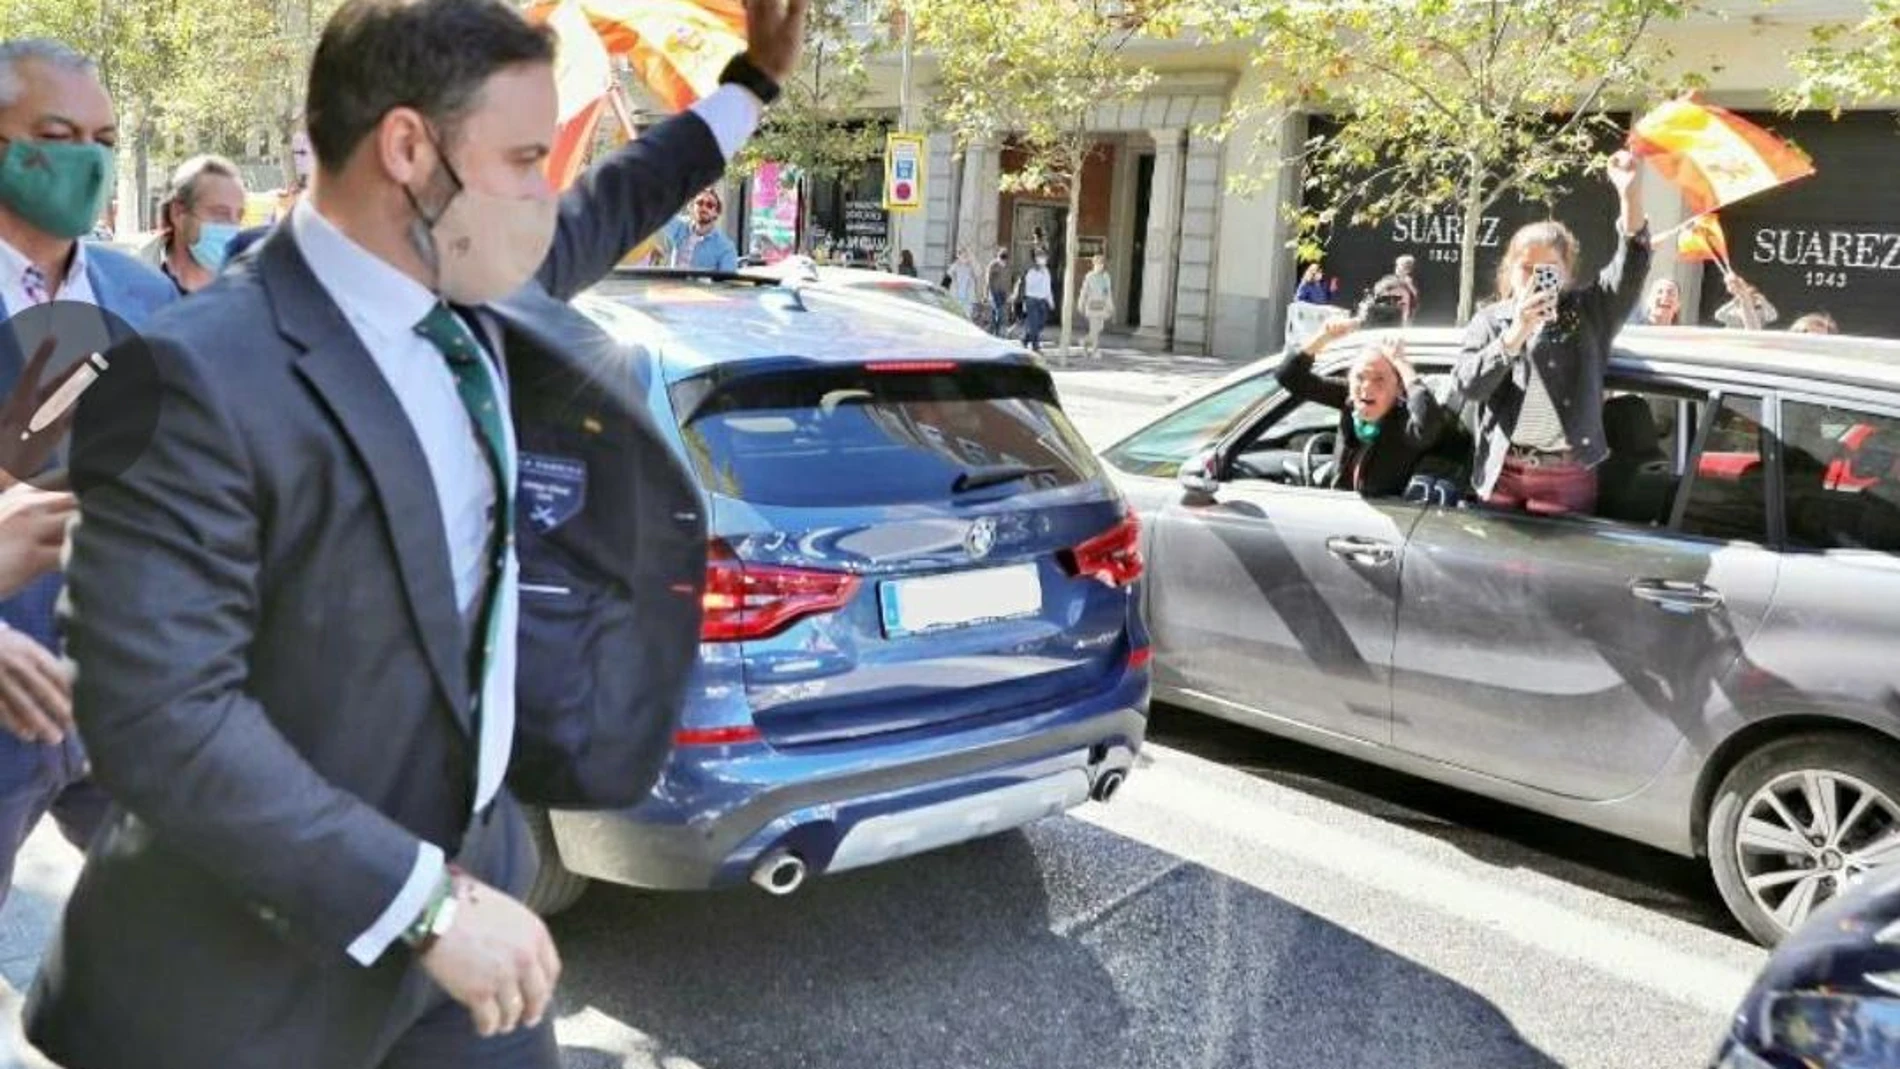 El líder de Vox, Santiago Abascal saluda a la caravana de vehículos a su llegada a la plaza de Colón de Madrid